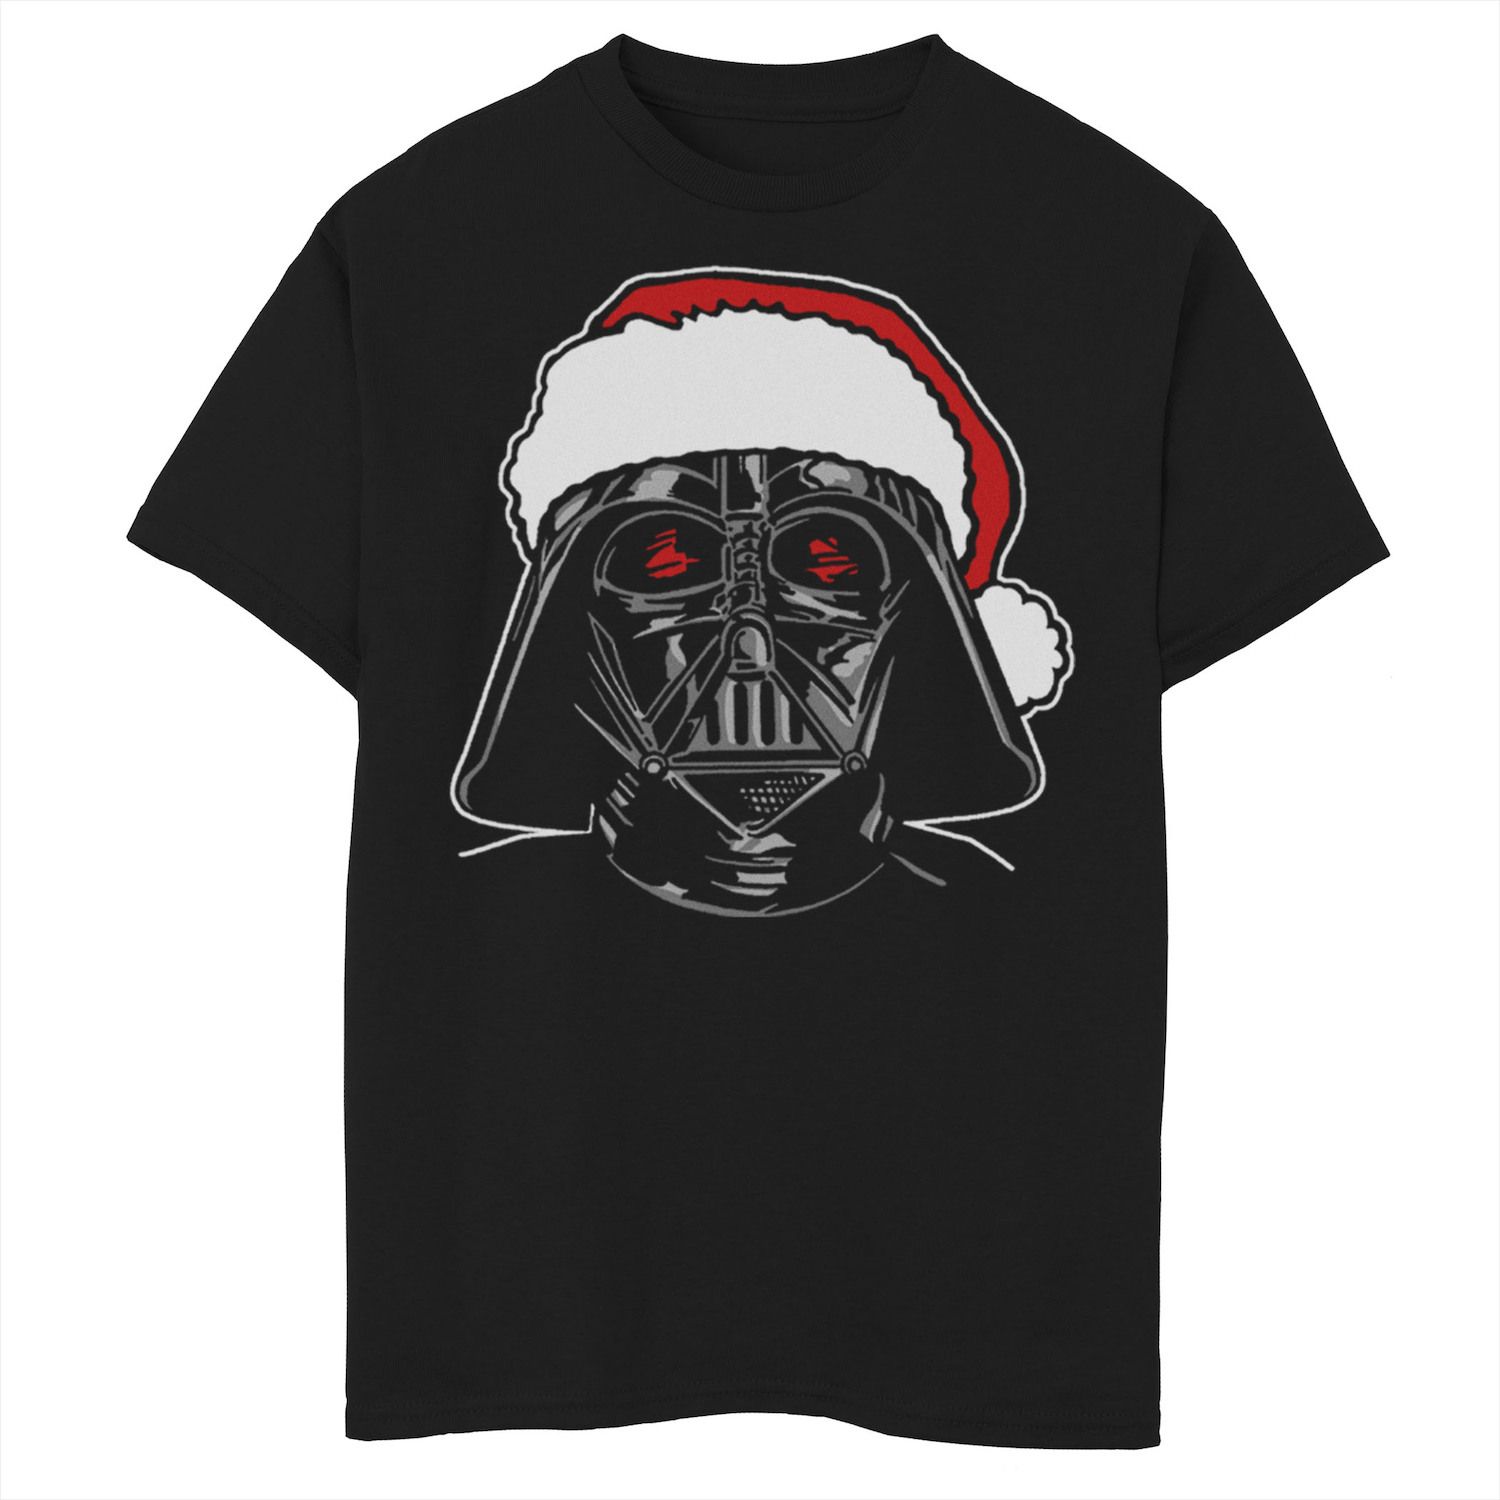 Рождественская футболка с рисунком Санта-Дарта Вейдера для мальчиков 8–20 лет «Звездные войны» Star Wars футболка с рисунком дарта вейдера для мальчиков 8–20 лет посвященная звездным войнам star wars